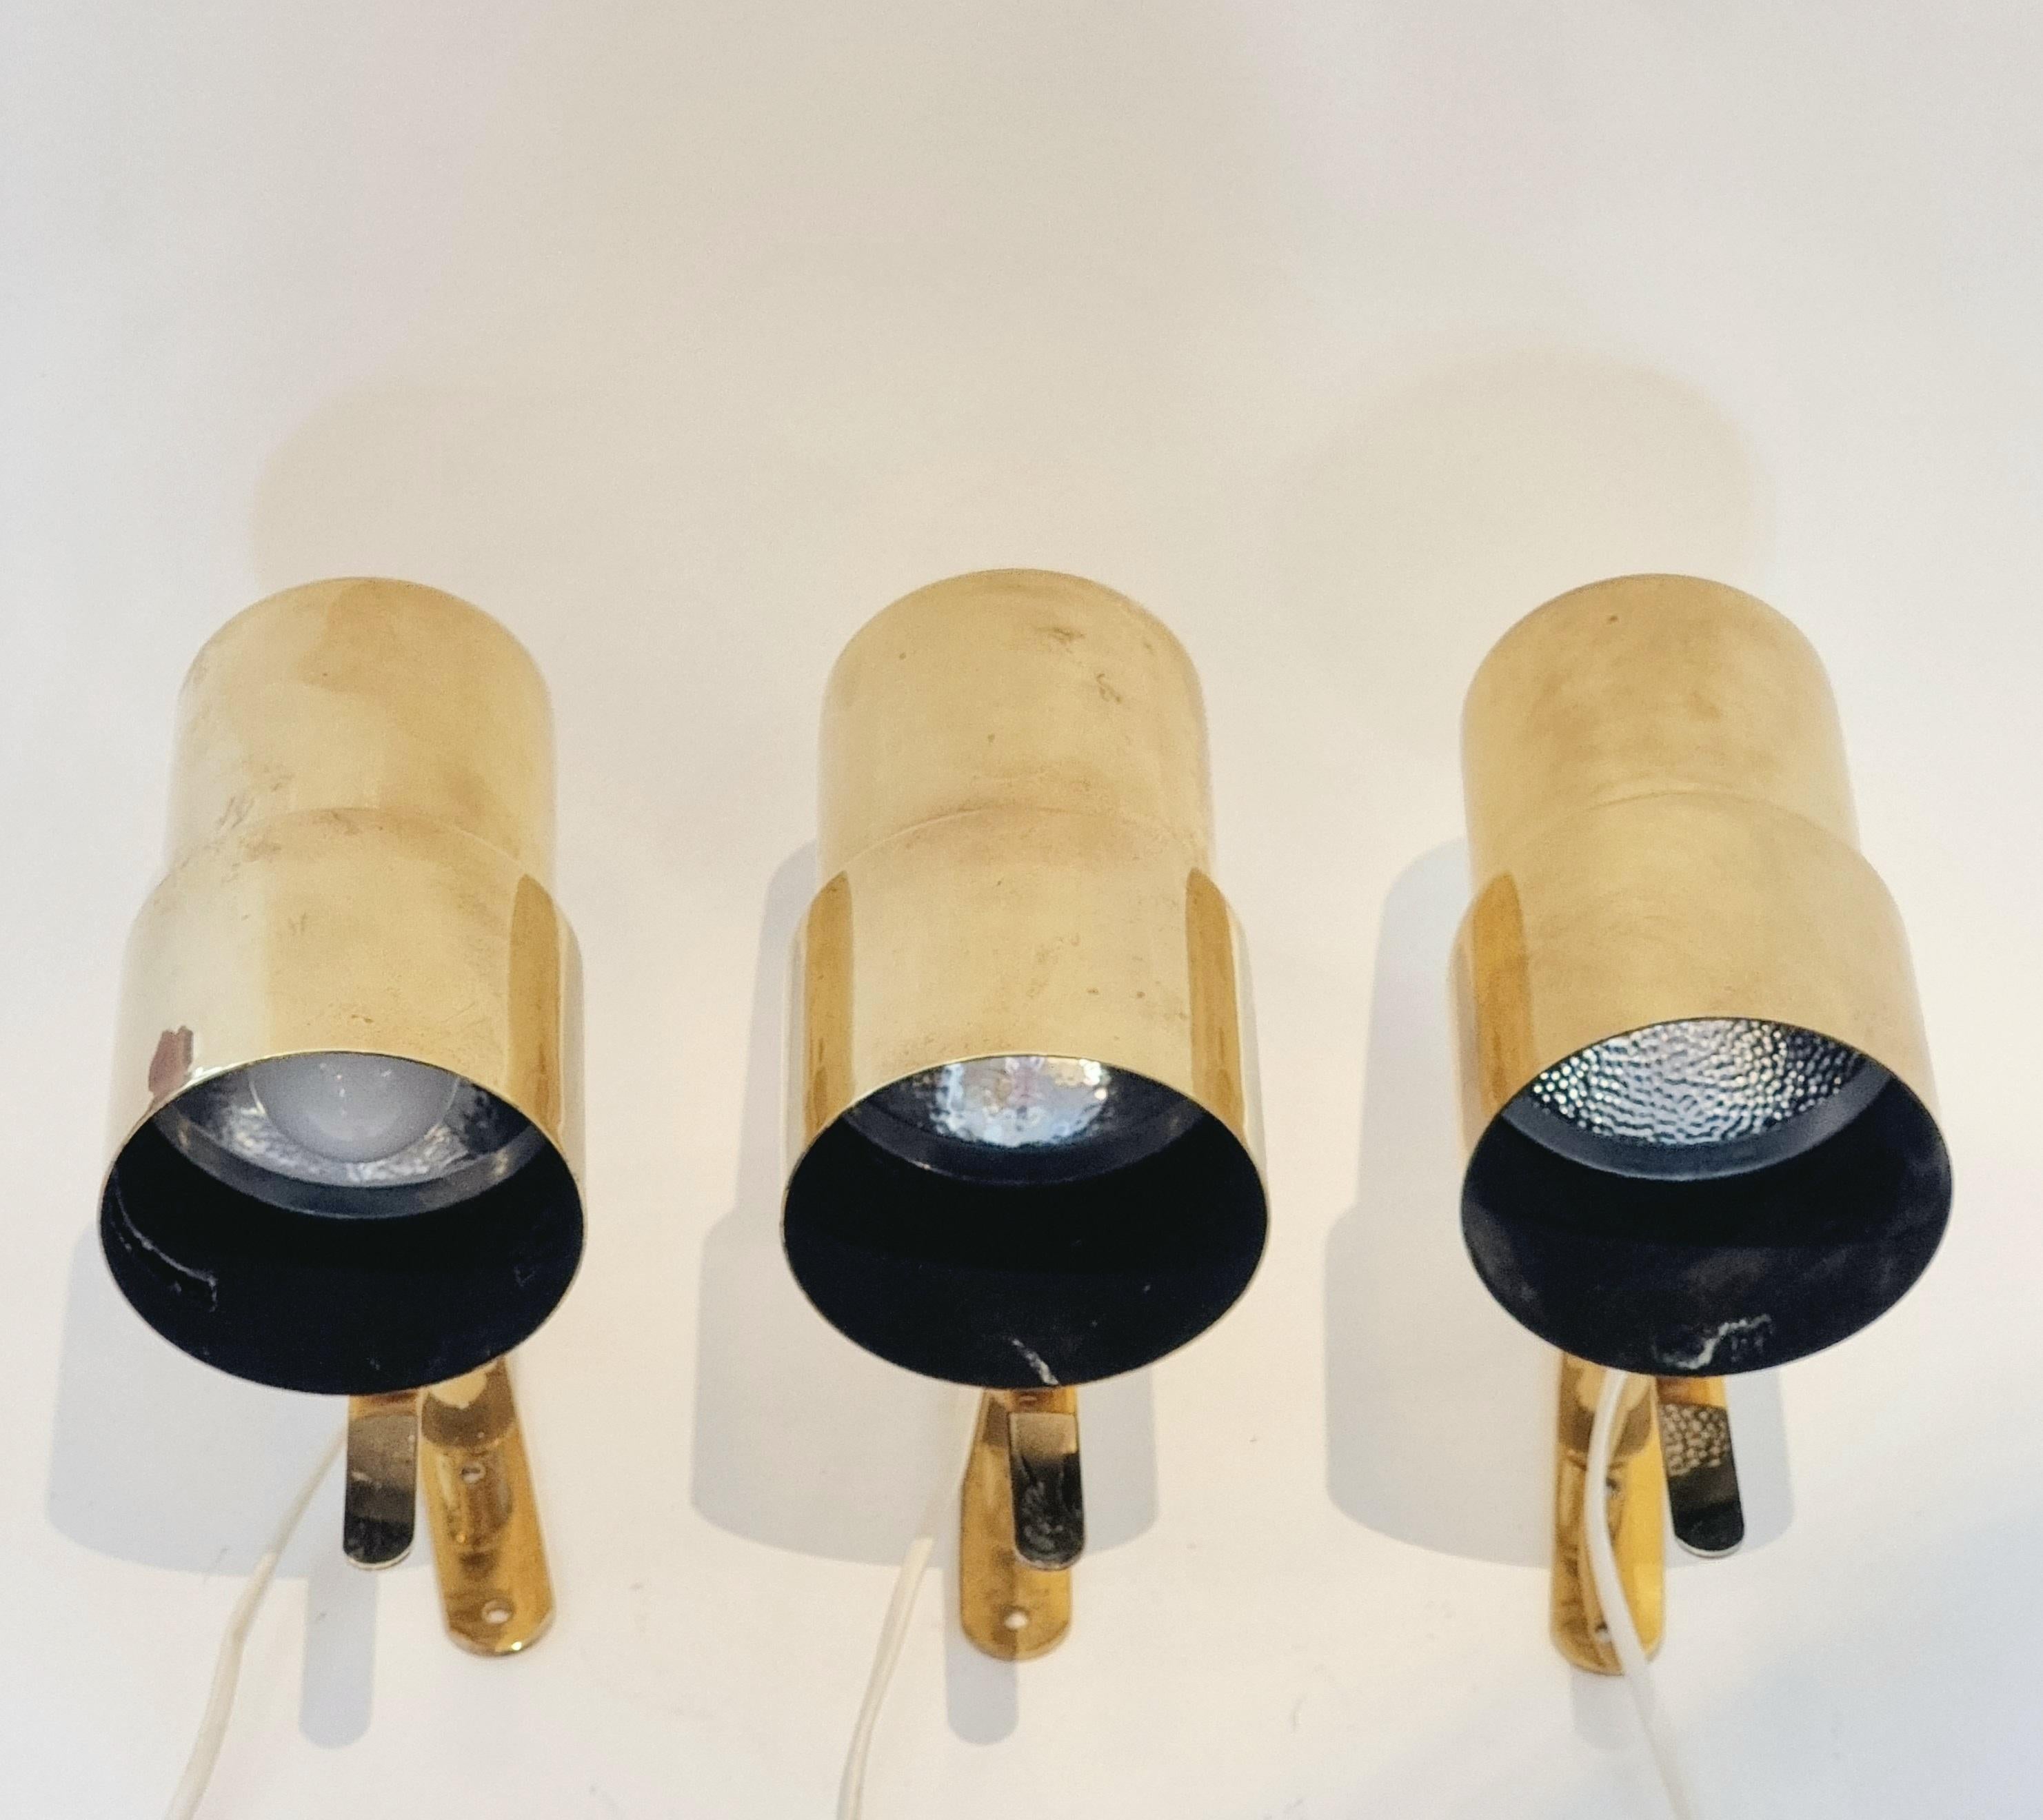  Klassische Wandlampen aus der Mitte des Jahrhunderts aus poliertem Messing, Modell V-324, entworfen von Hans-Agne Jakobsson für Markaryd AB, Schweden. Produziert in den 1960er Jahren. 3 Stück verfügbar, verkauft pro Stück.


Guter alters- und